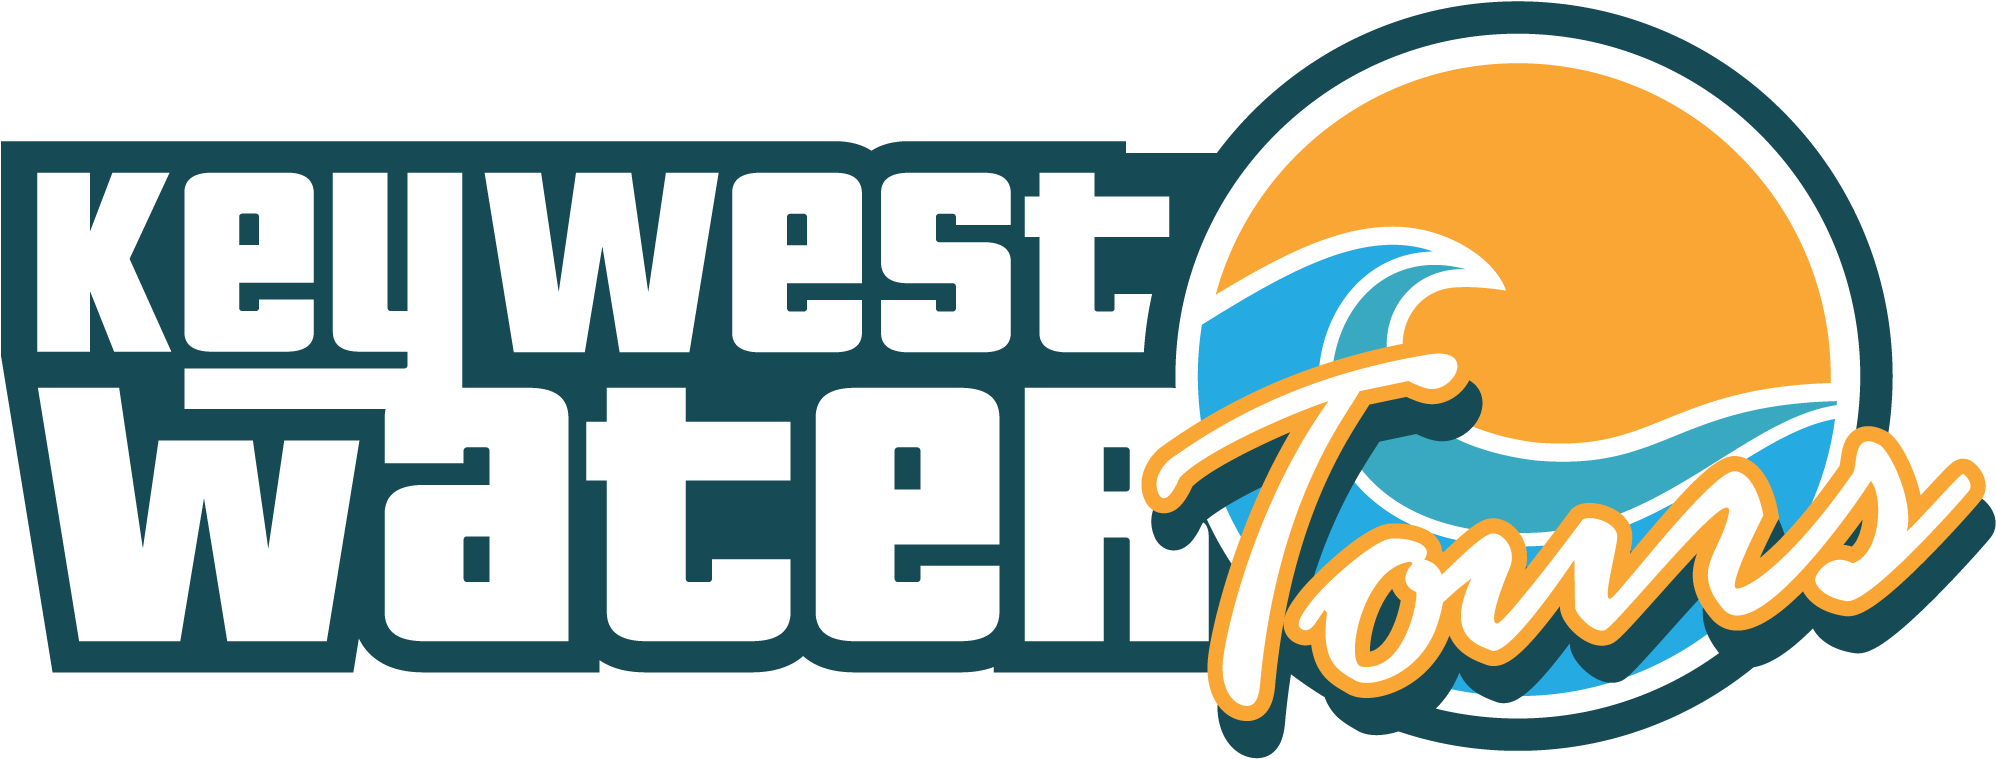 Key West Water Tours Logo - Key West Water Tours (2000x767)